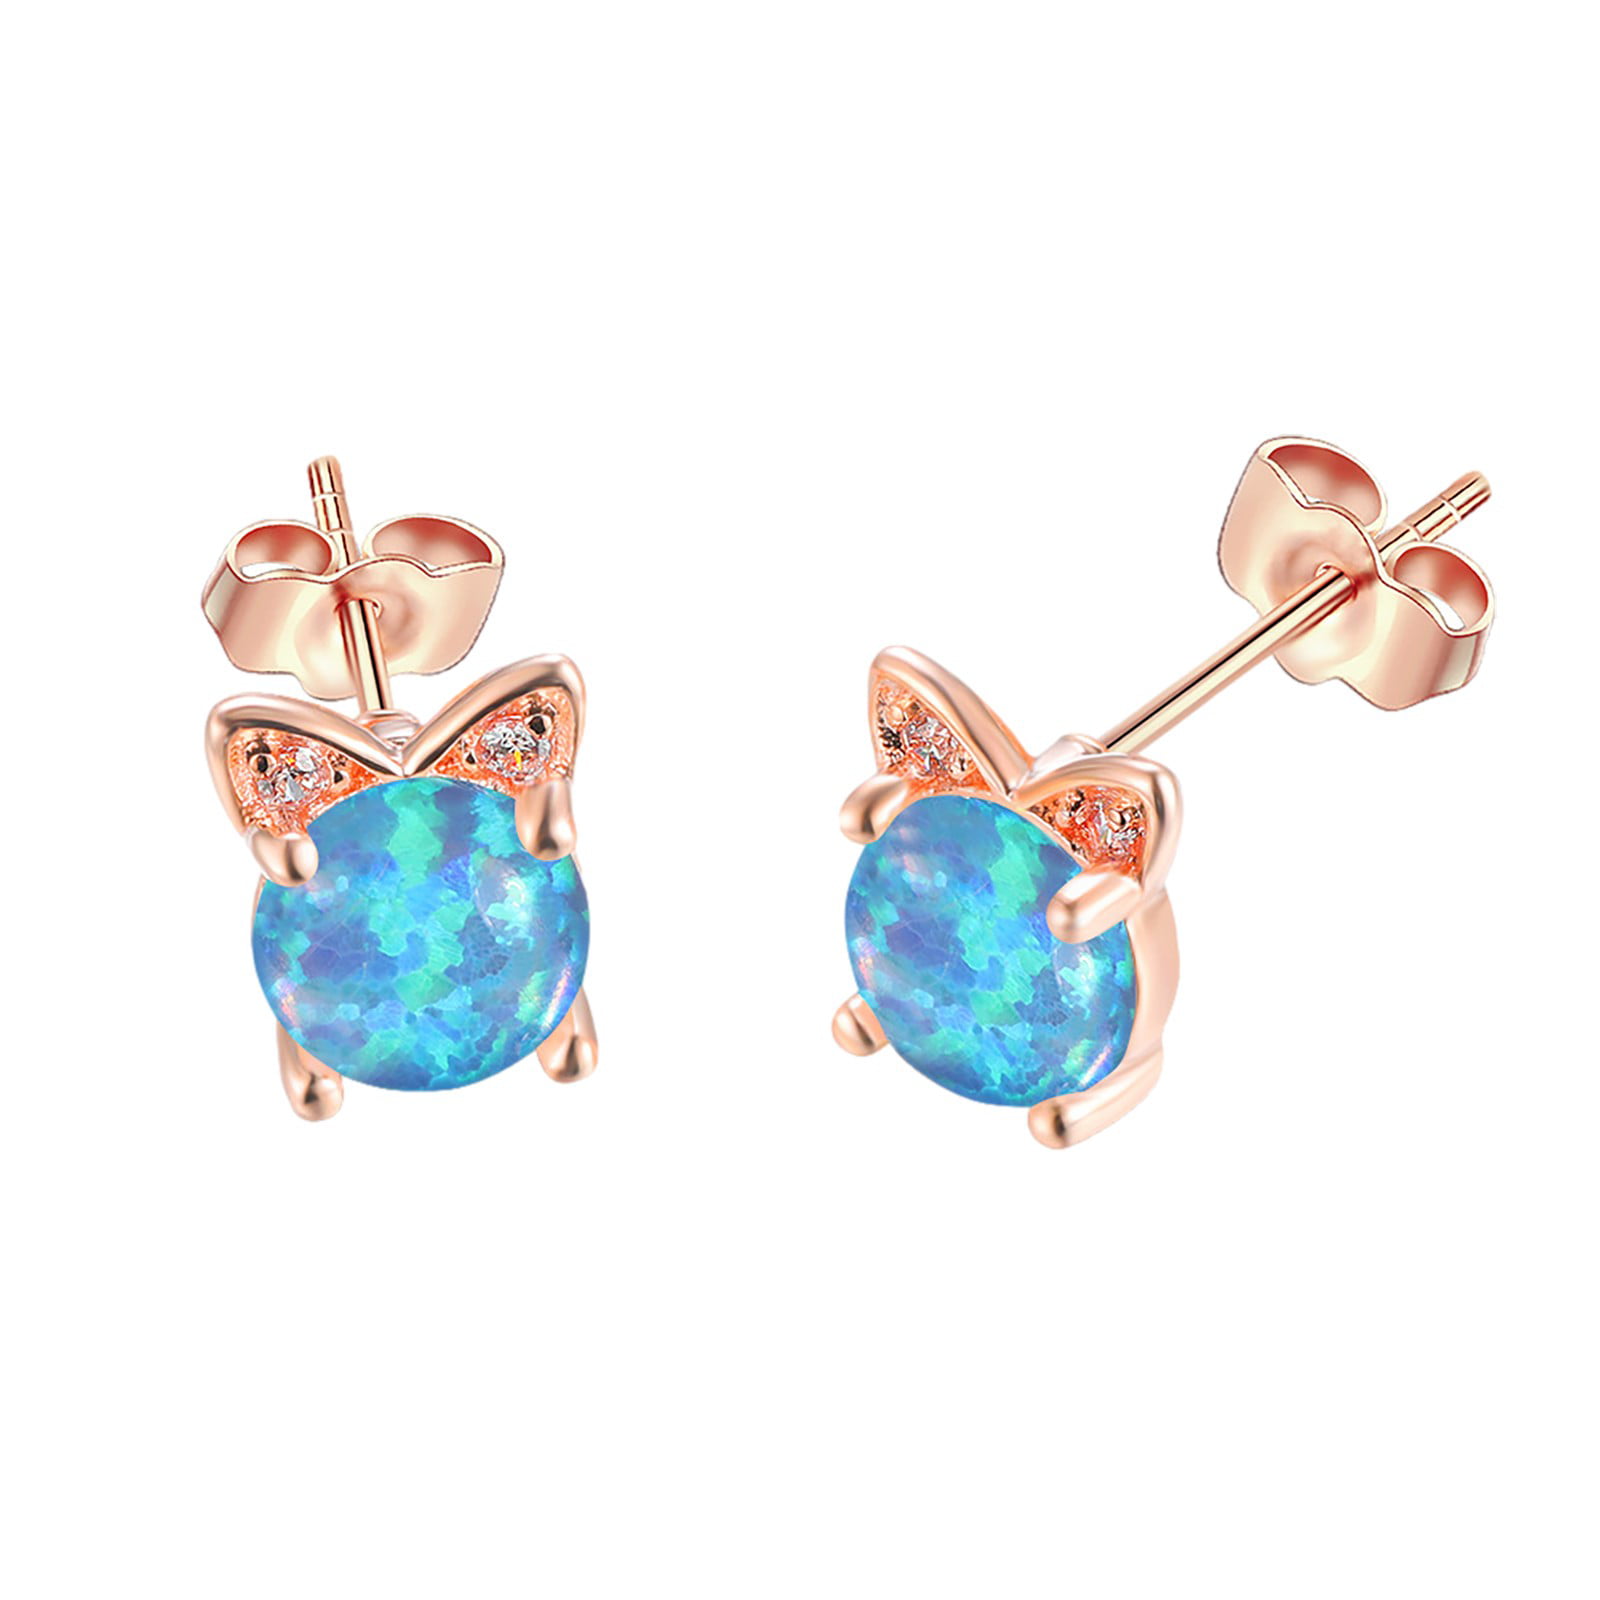 Cute Small Quirky Earrings- II | Quirky earrings, Fashion earrings, Funky  earrings